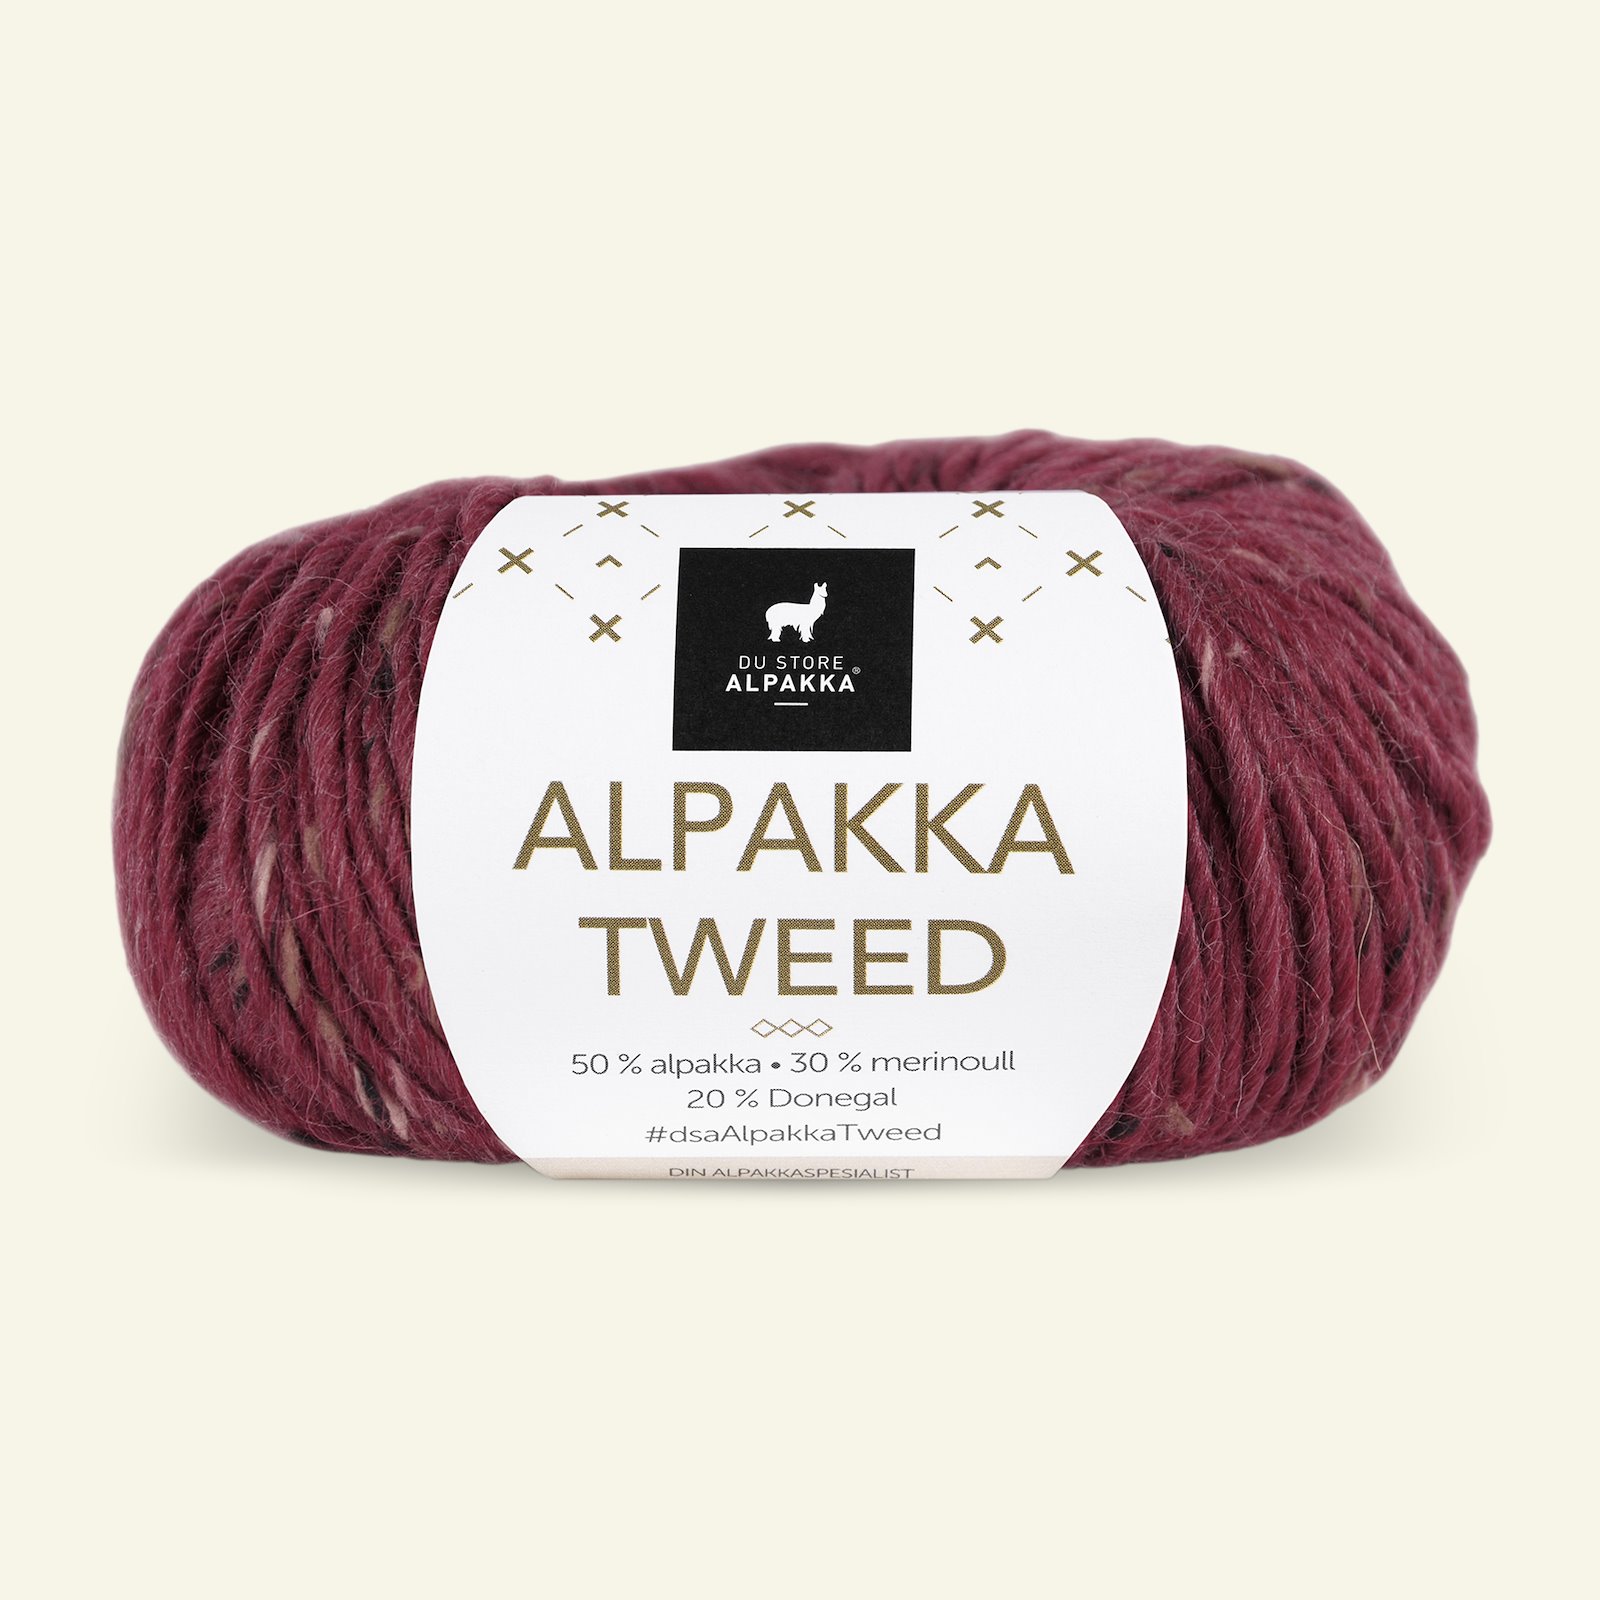 Du Store Alpakka, tweed ullgarn "Alpakka Tweed", dyb rød (116) 90000527_pack